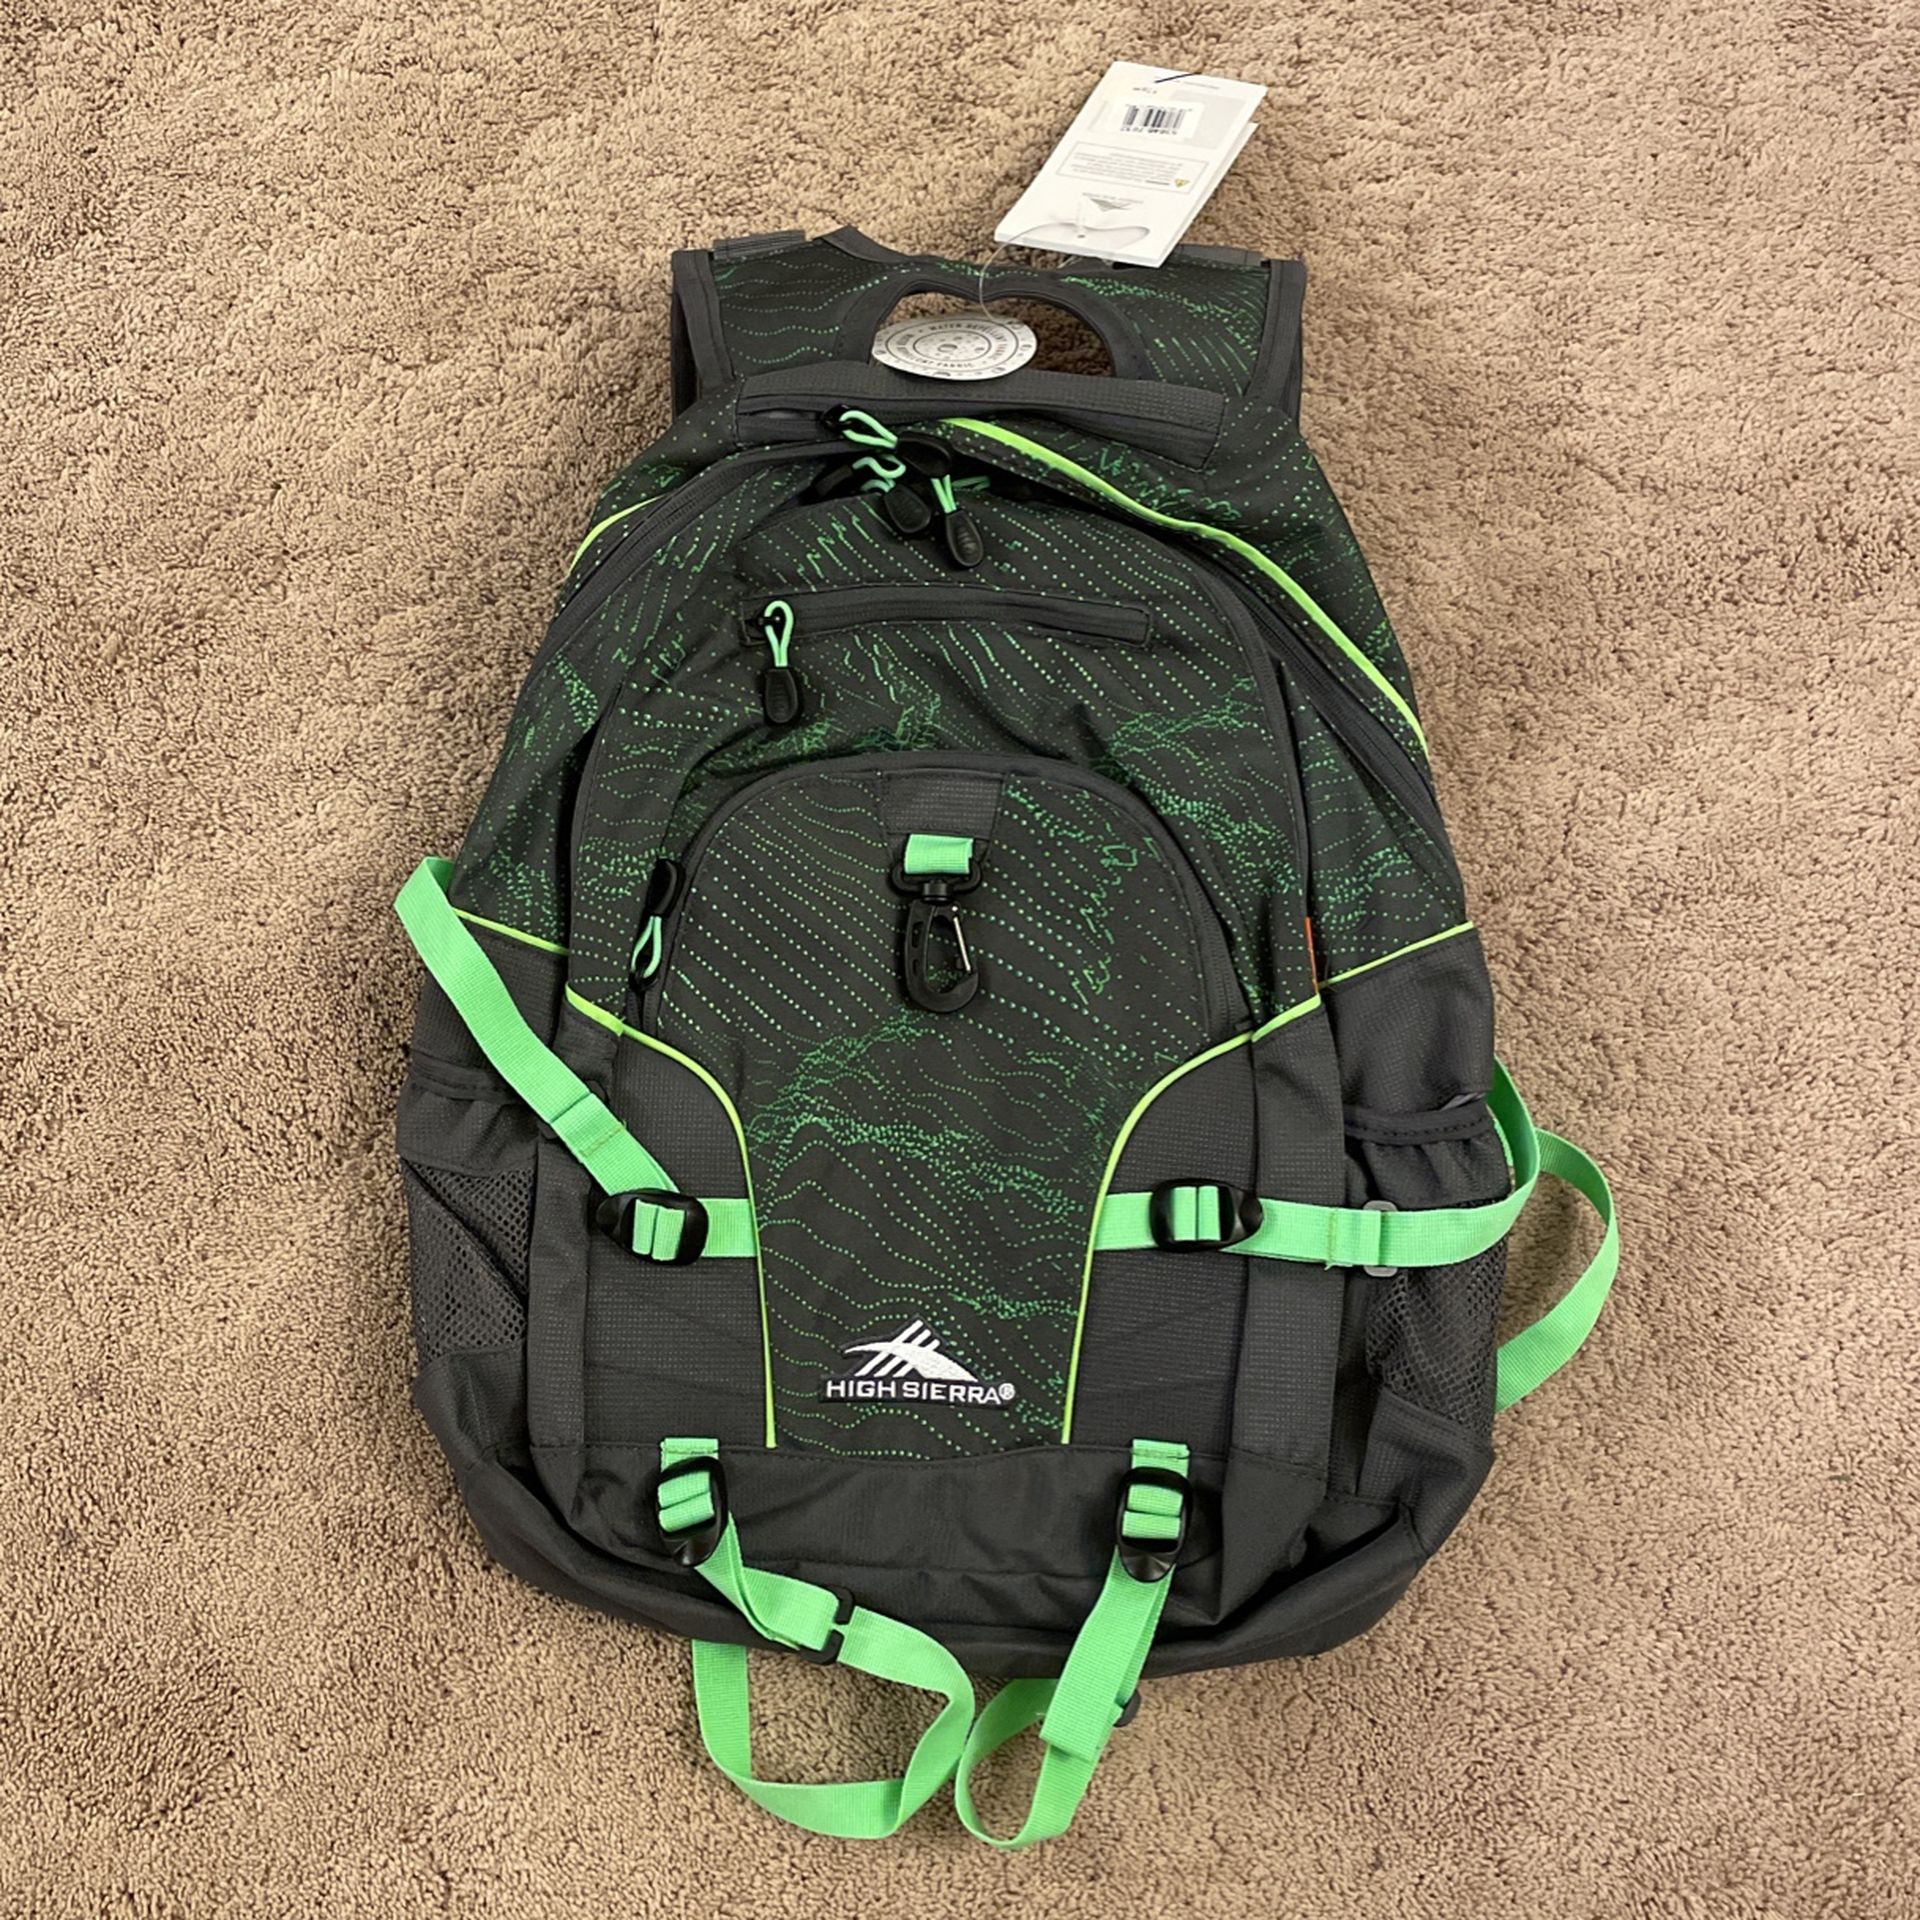 High Sierra Loop Tech Backpack- Brand new!